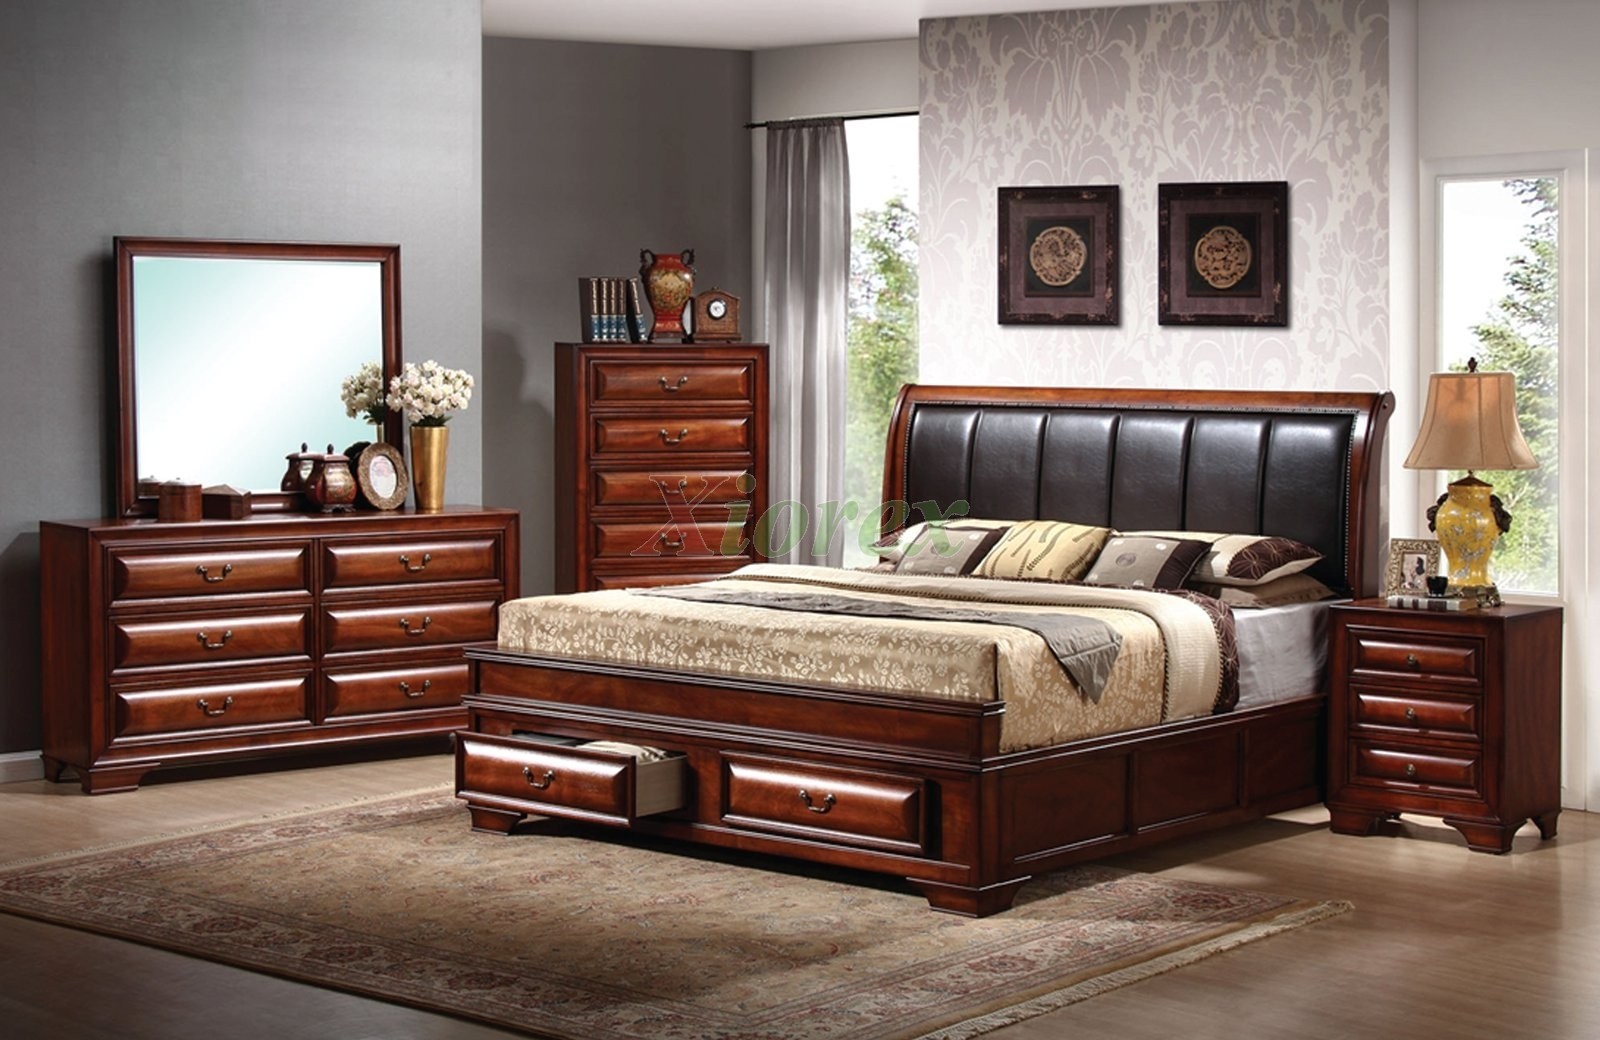 Platform bedroom furniture set with leather headboard beds 1